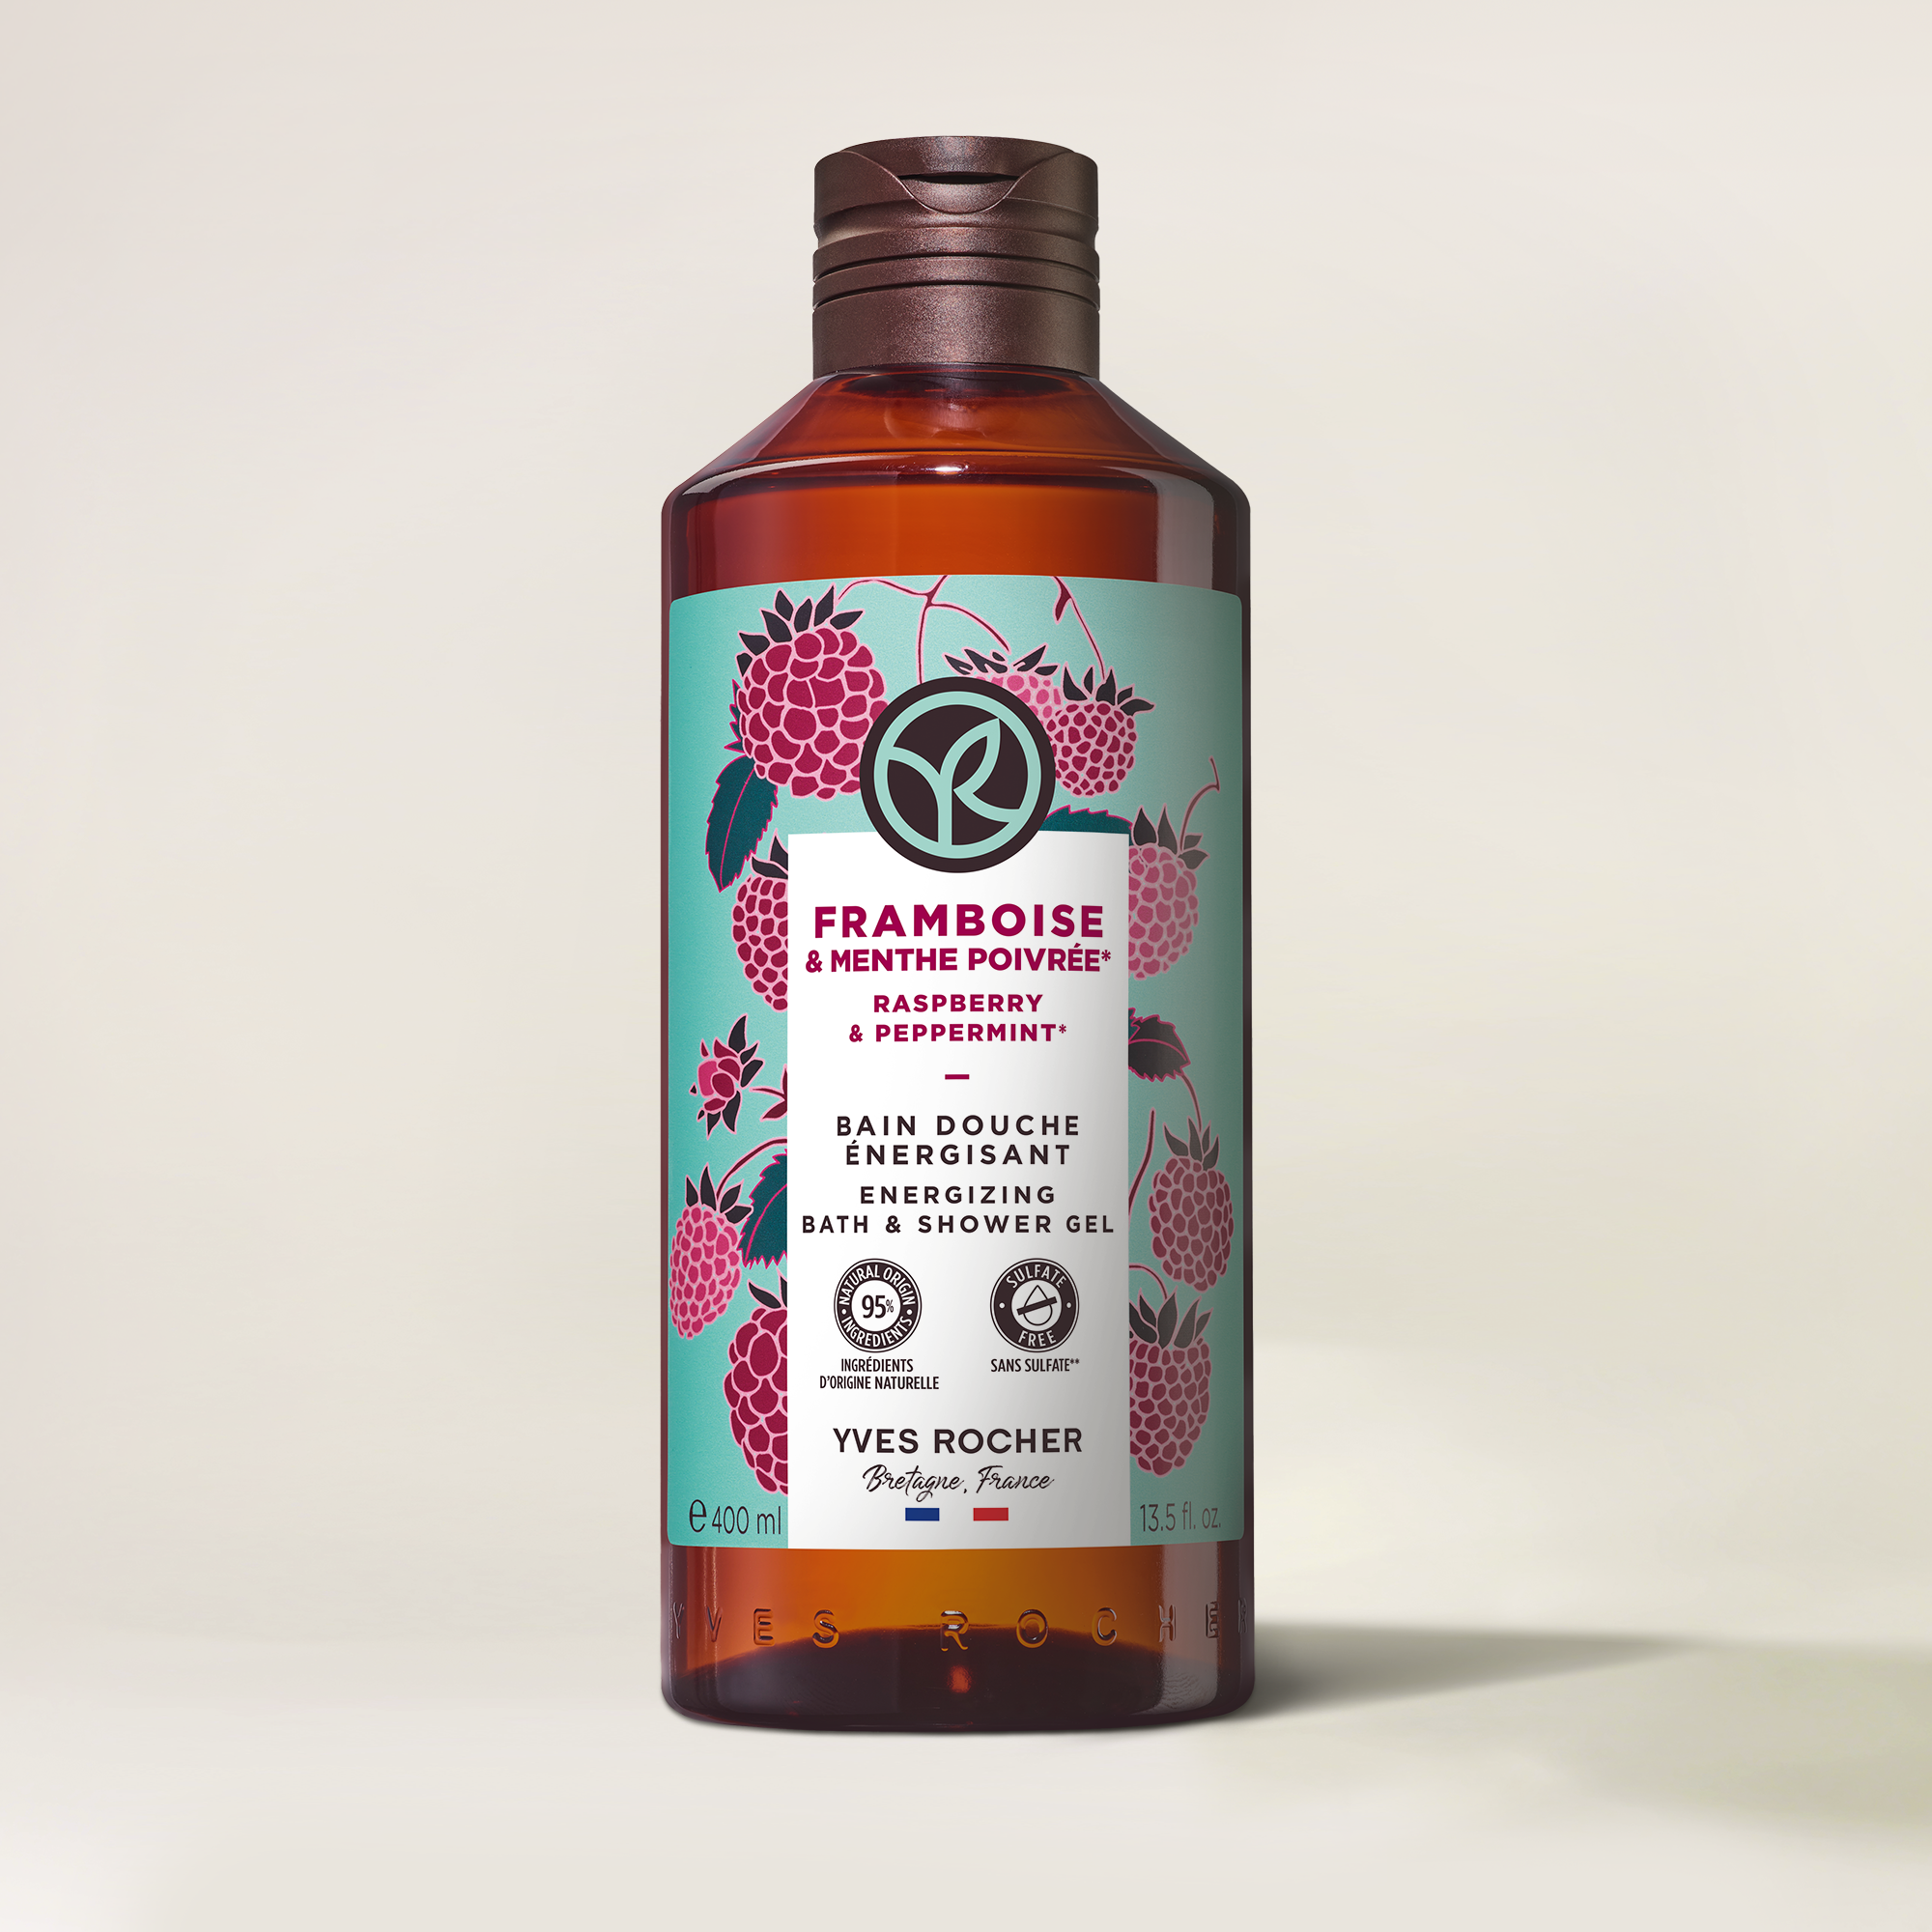 Raspberry & Peppermint Energizing Bath & Shower Gel